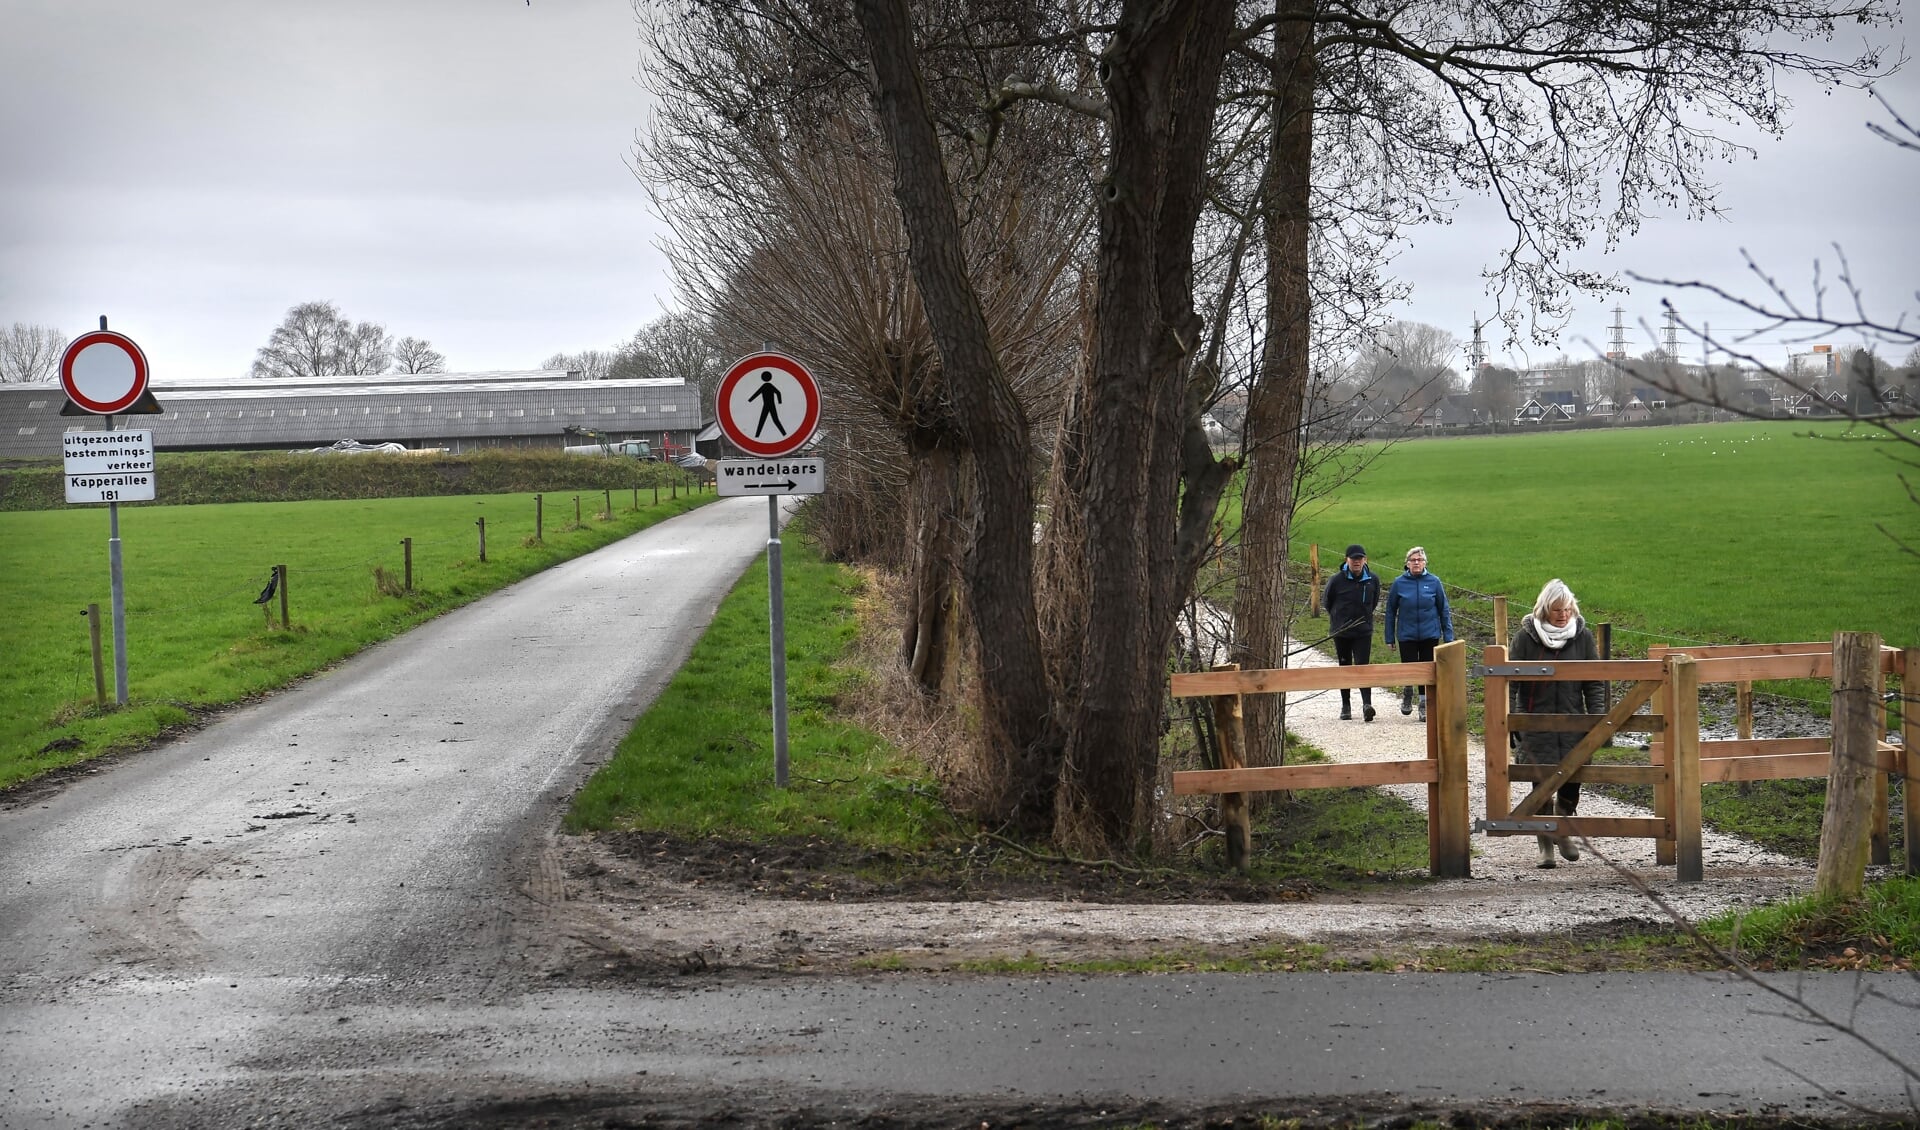 Het nieuwe pad dat de gemeente liet aanleggen, zodat wandelaars niet meer over het erf van boer Hans hoeven lopen.